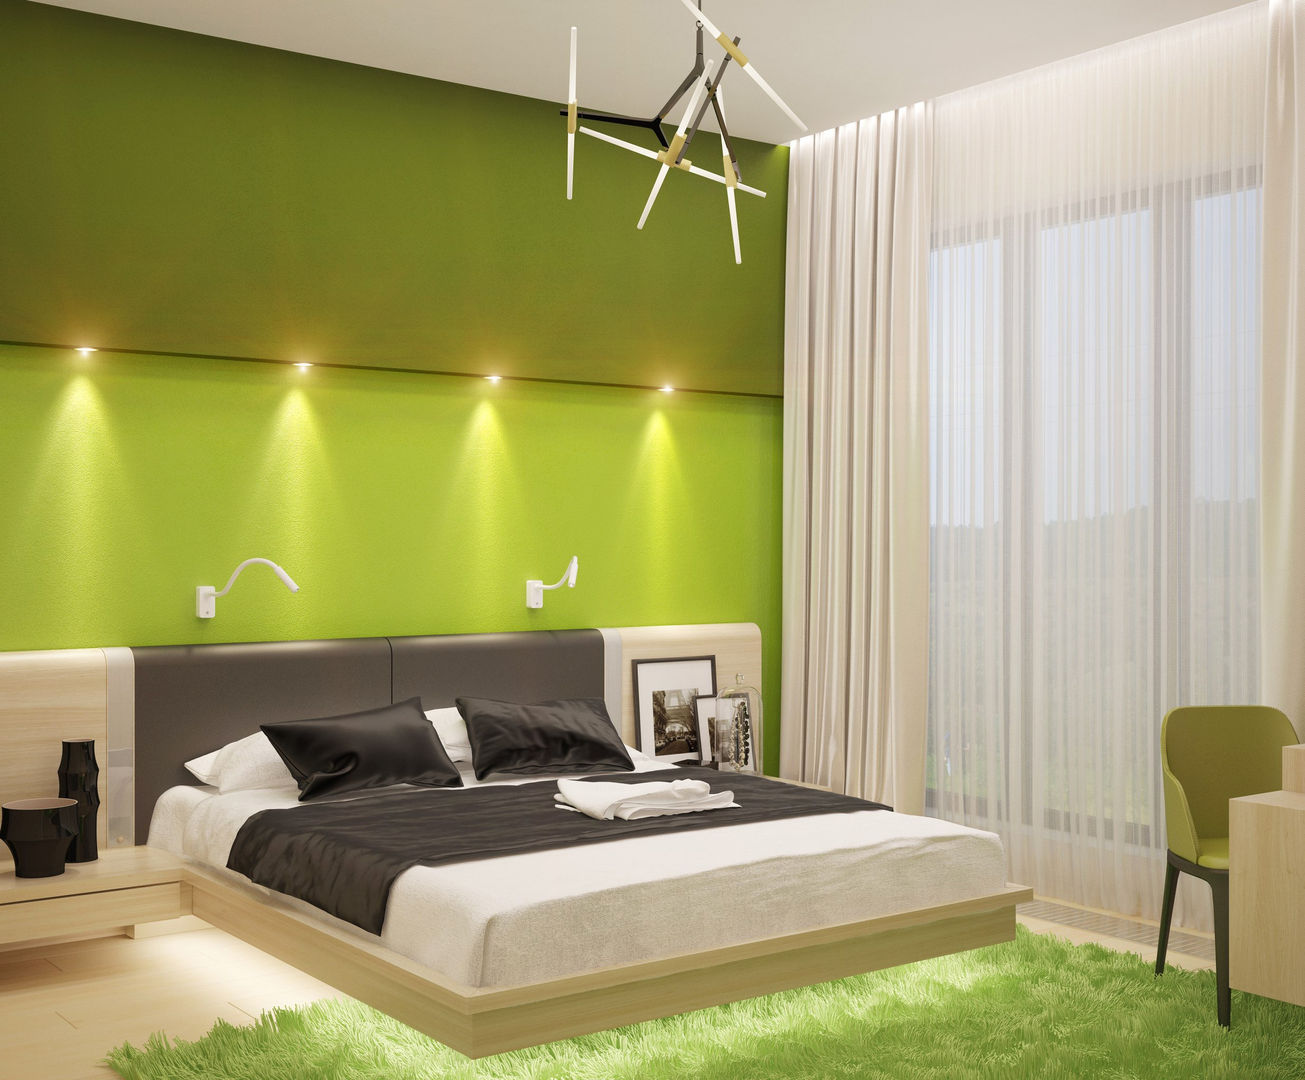 Яркие краски для спальни в стиле минимализм, Студия дизайна ROMANIUK DESIGN Студия дизайна ROMANIUK DESIGN Minimalistyczna sypialnia